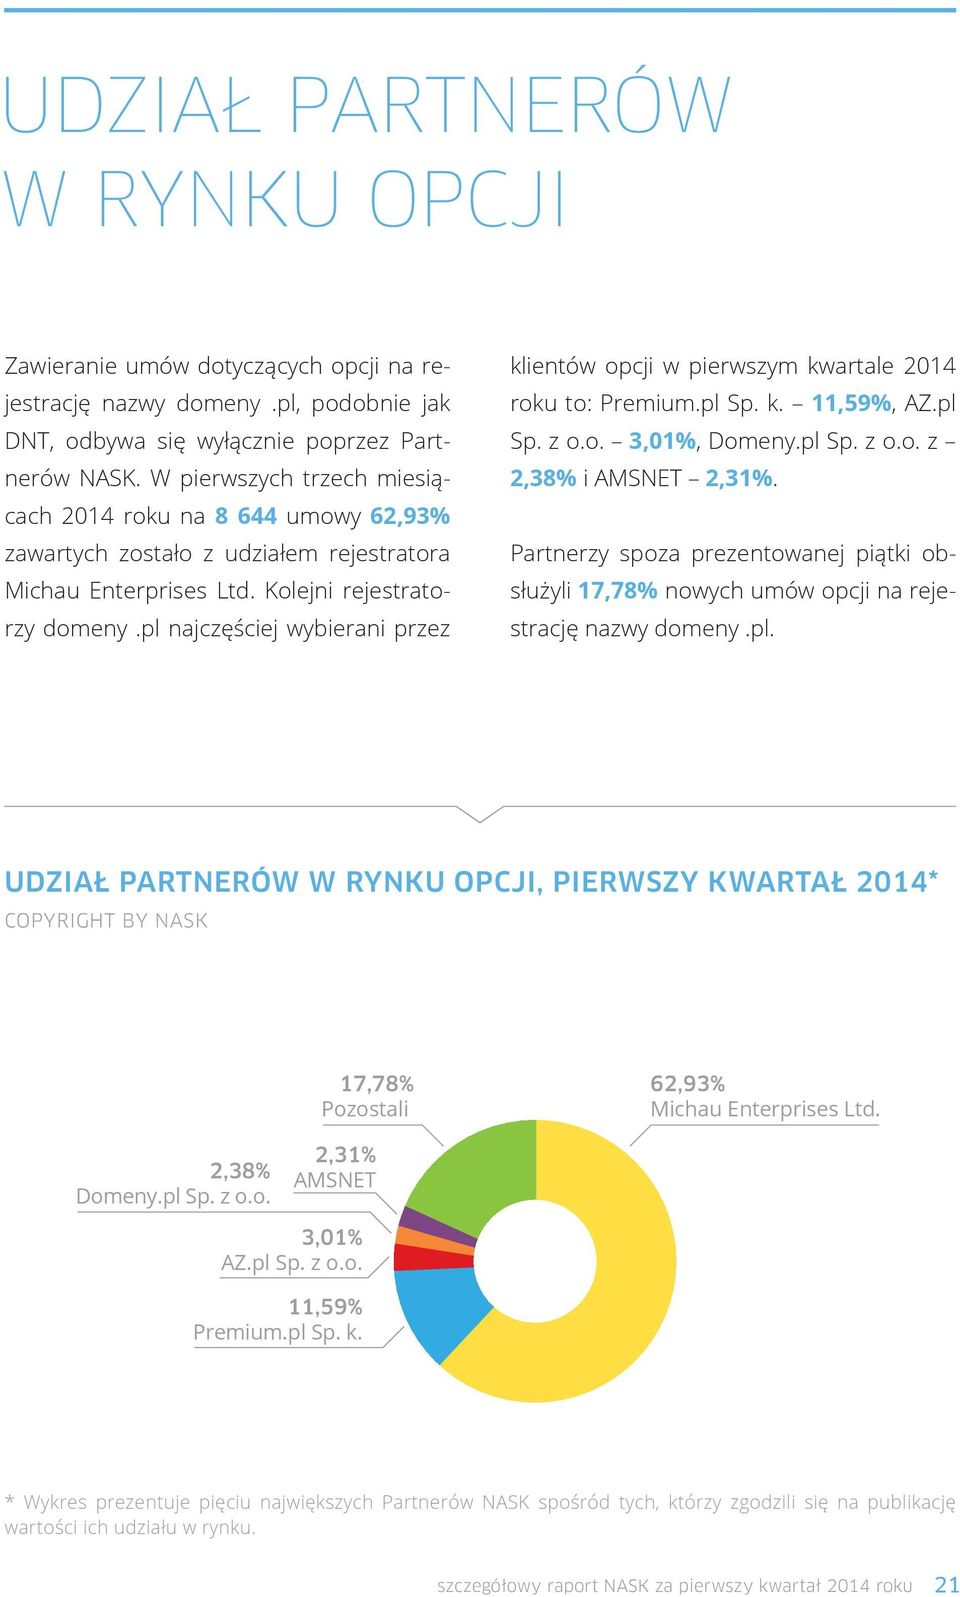 pl najczęściej wybierani przez klientów opcji w pierwszym kwartale 2014 roku to: Premium.pl Sp. k. 11,59%, AZ.pl Sp. z o.o. 3,01%, Domeny.pl Sp. z o.o. z 2,38% i AMSNET 2,31%.